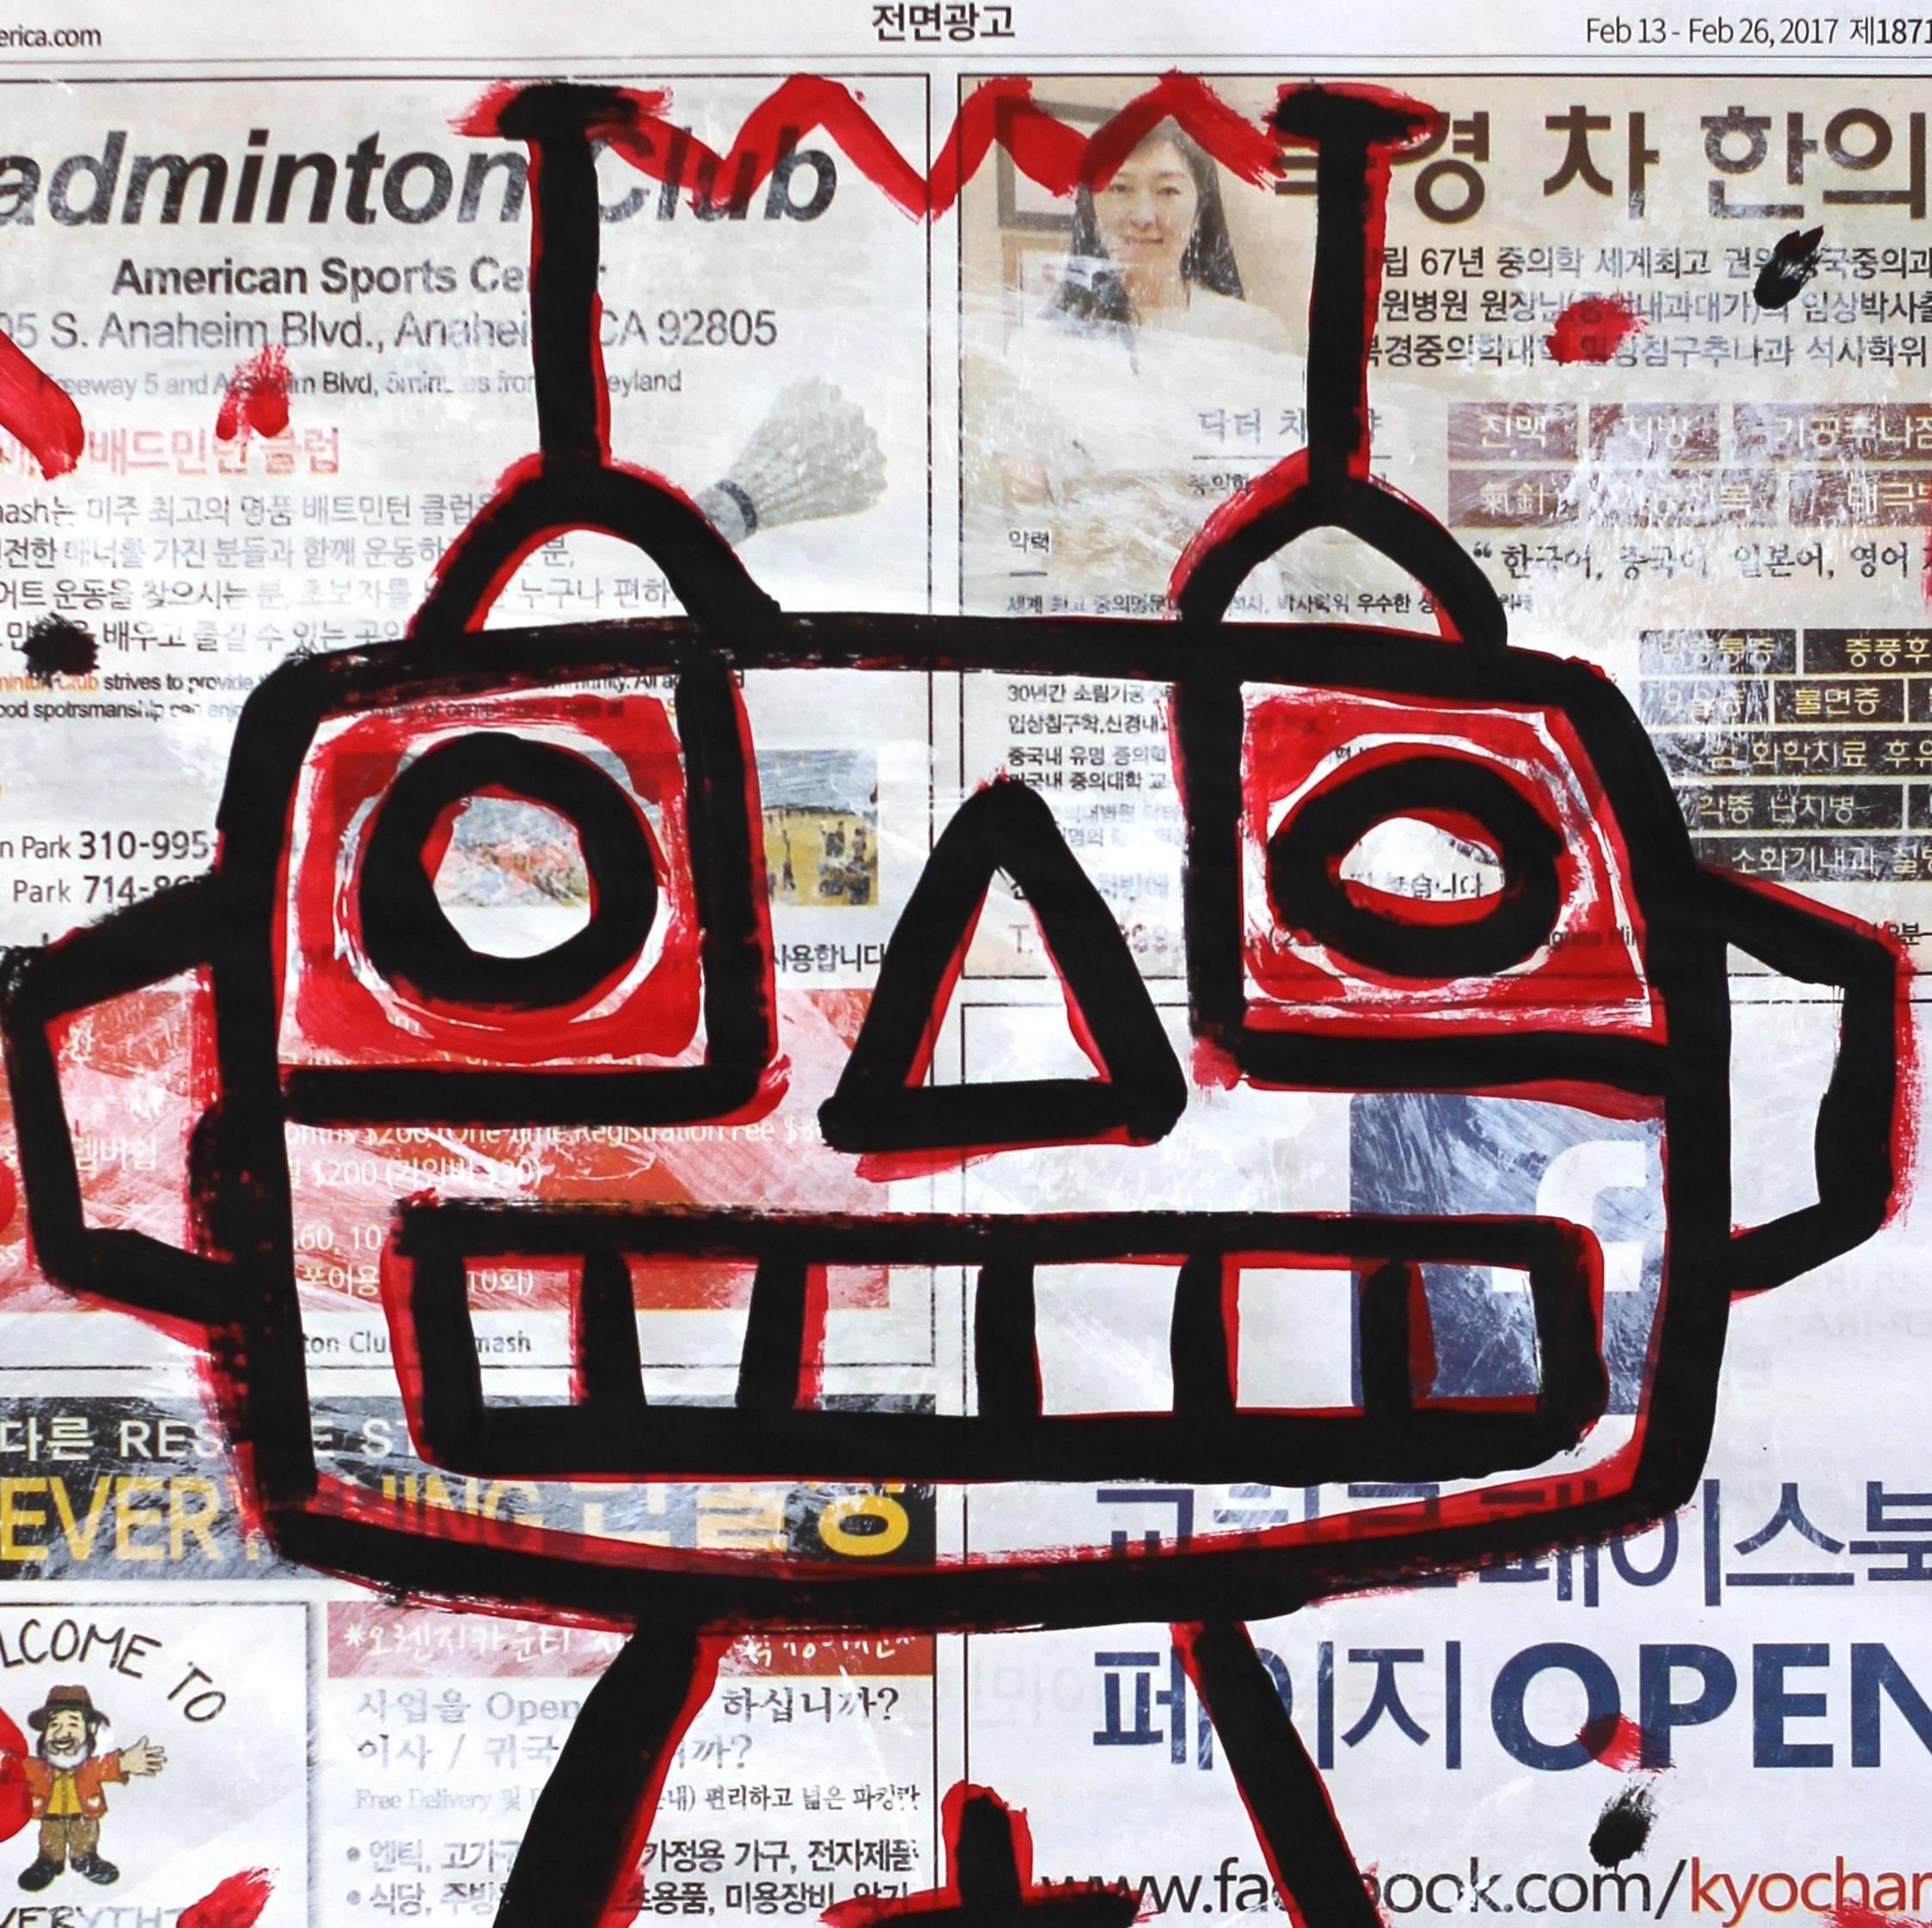 Robot King - Street Art Mixed Media Art by Gary John